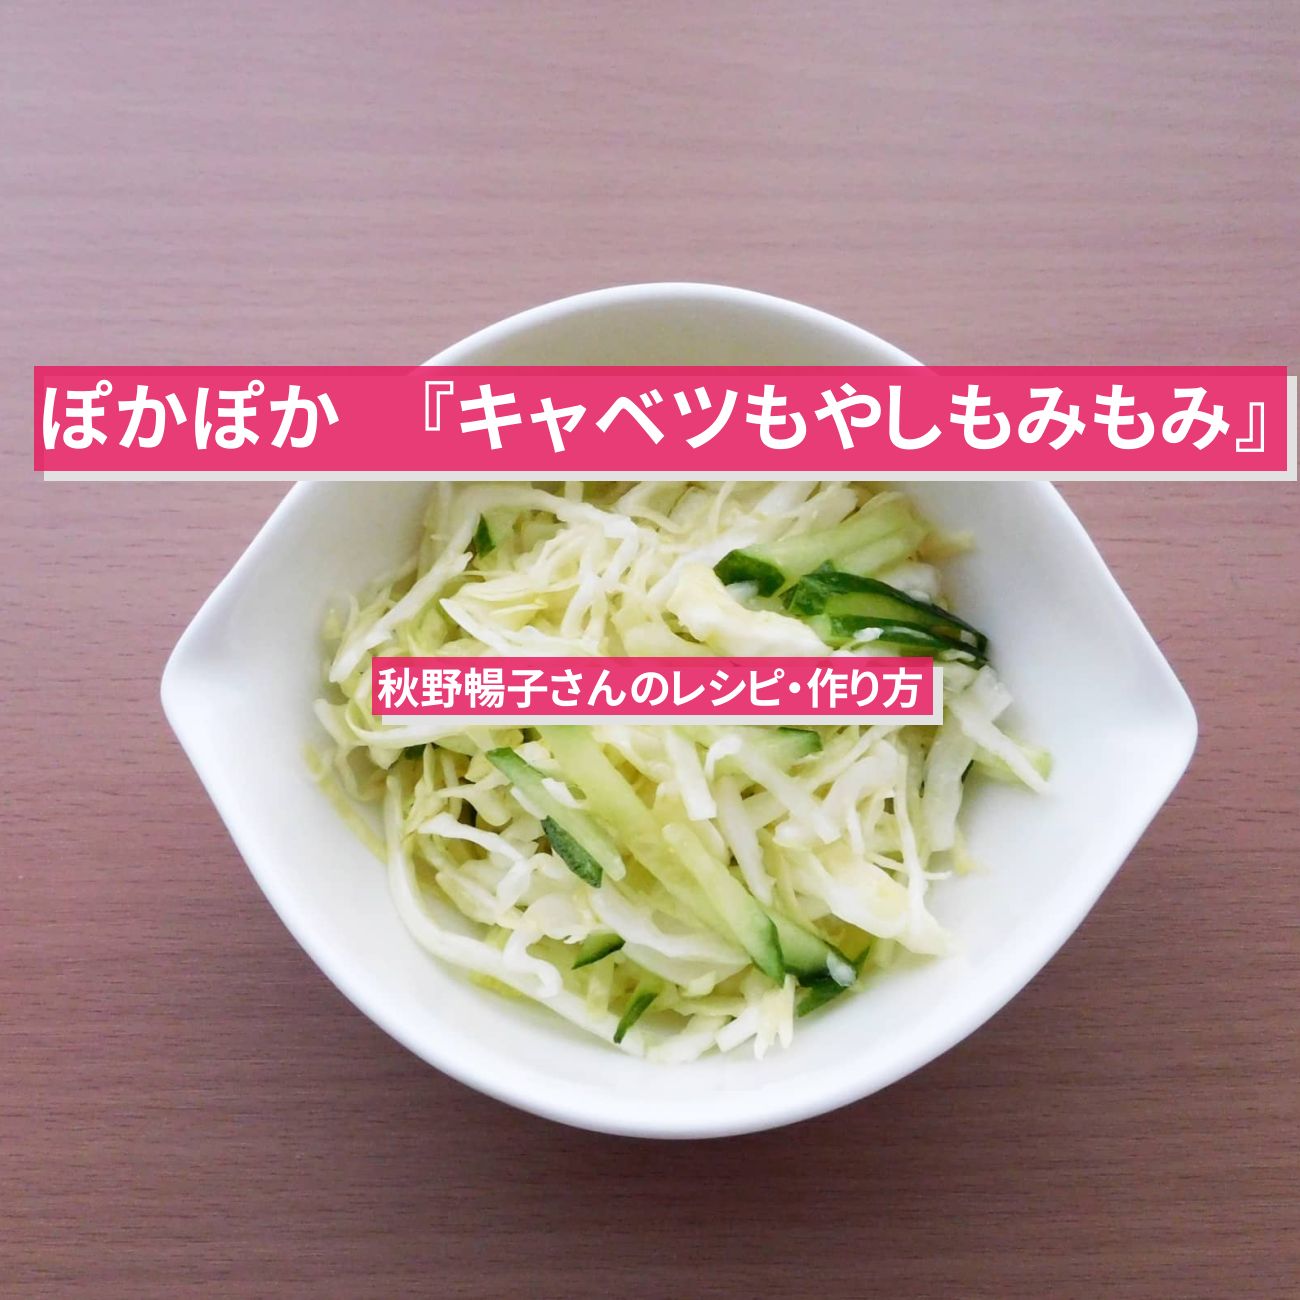 【ぽかぽか】『キャベツもやしもみもみサラダ』秋野暢子さんのレシピ・作り方